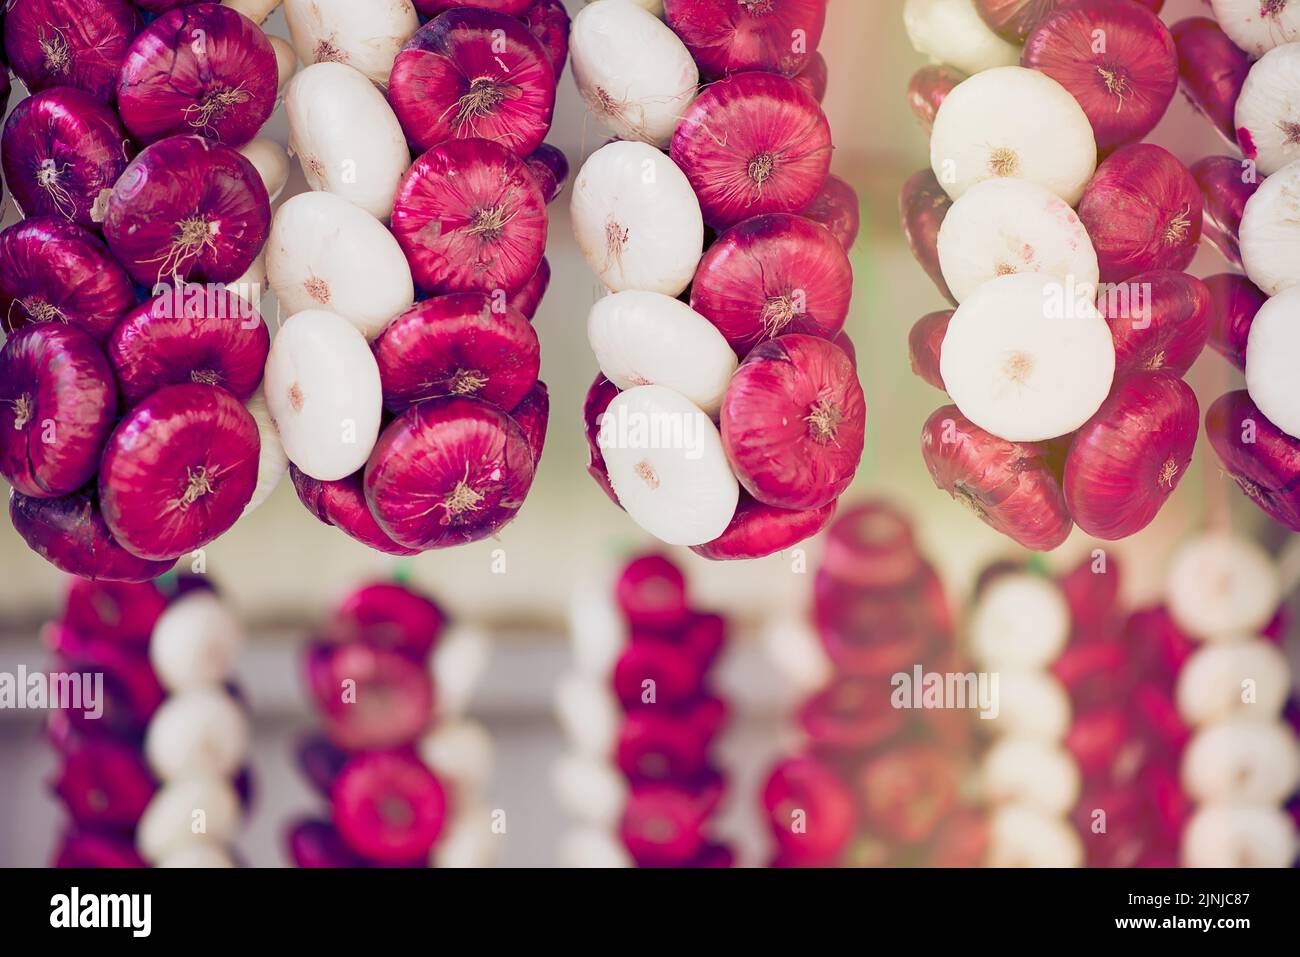 Commercializzazione diretta di treccia di aglio e cipolle appese di fronte, cipolla rossa e bianca Foto Stock